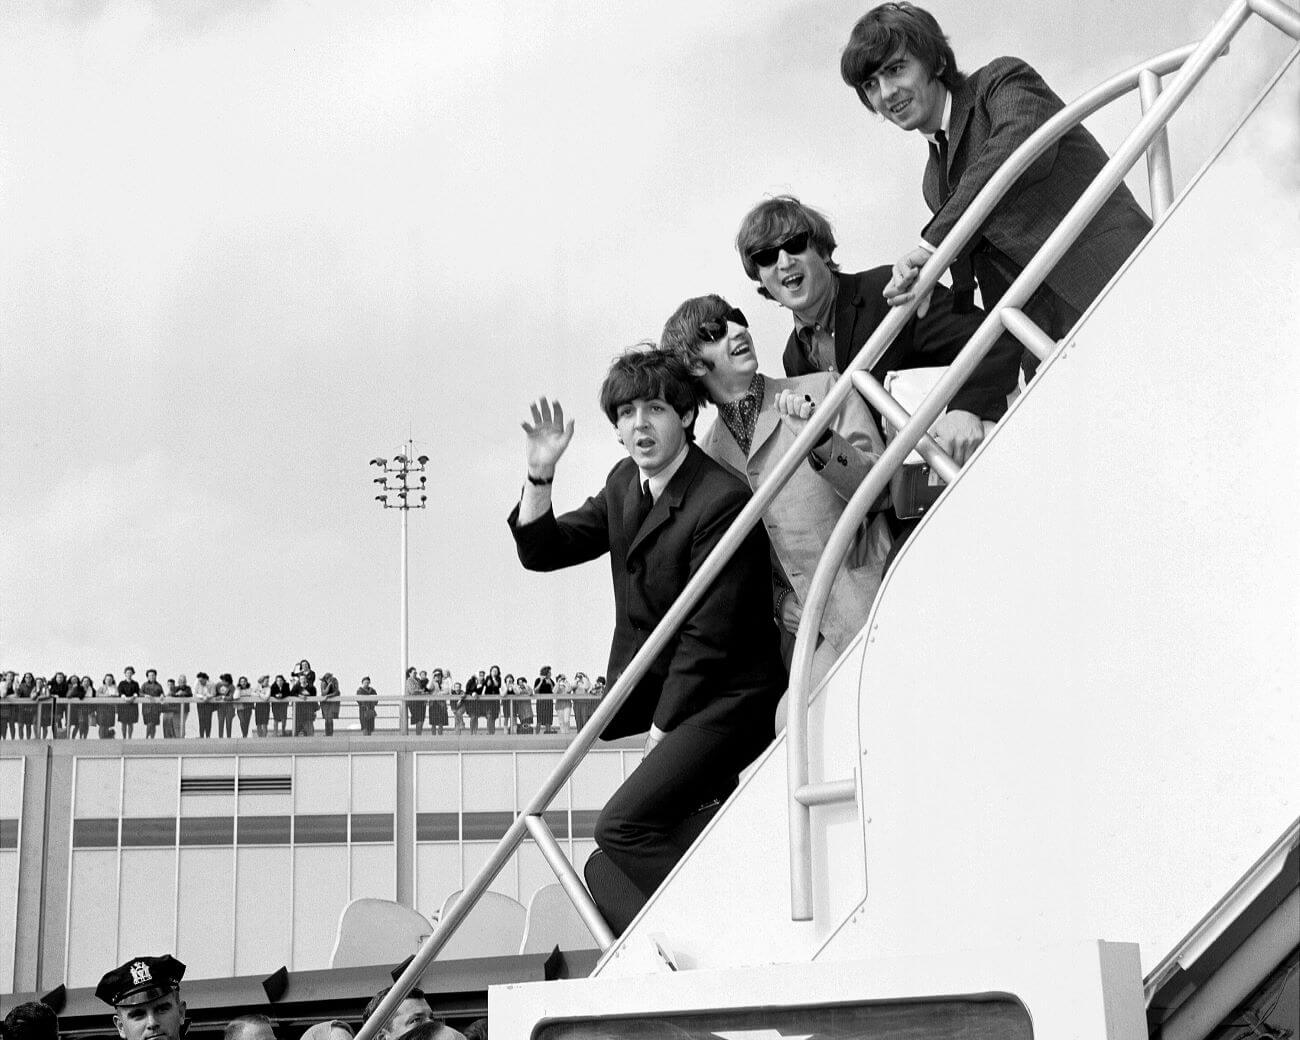 비틀즈는 미국에서 일련의 참혹한 공연을 한 후 투어를 중단하기로 결정했습니다.